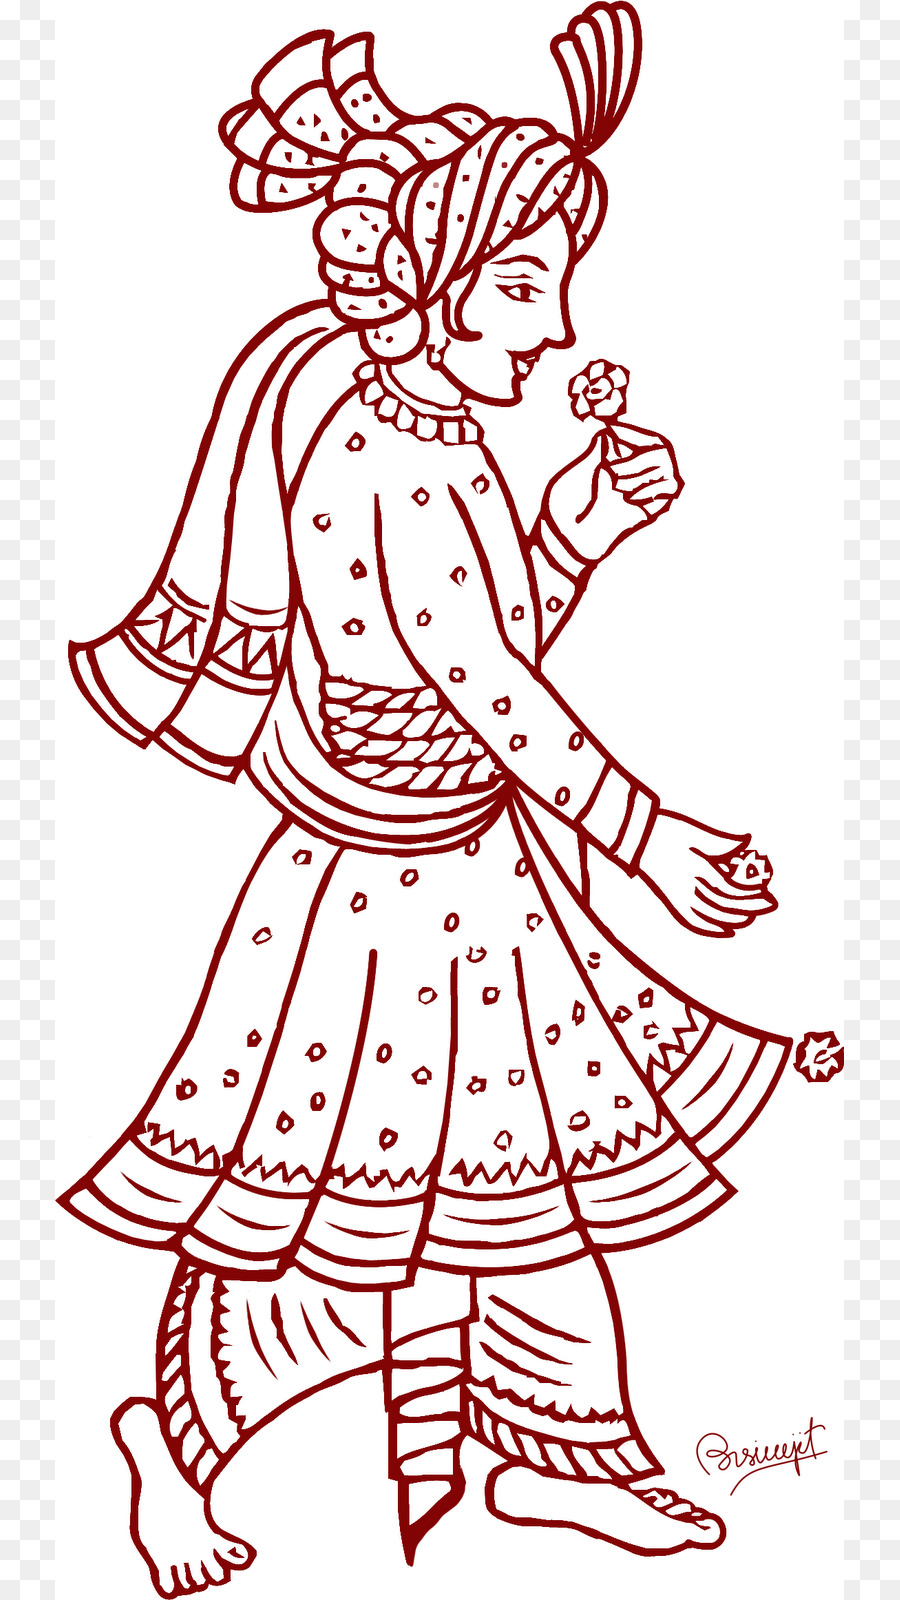 Weddings in India Bridegroom Hindu wedding Clip art